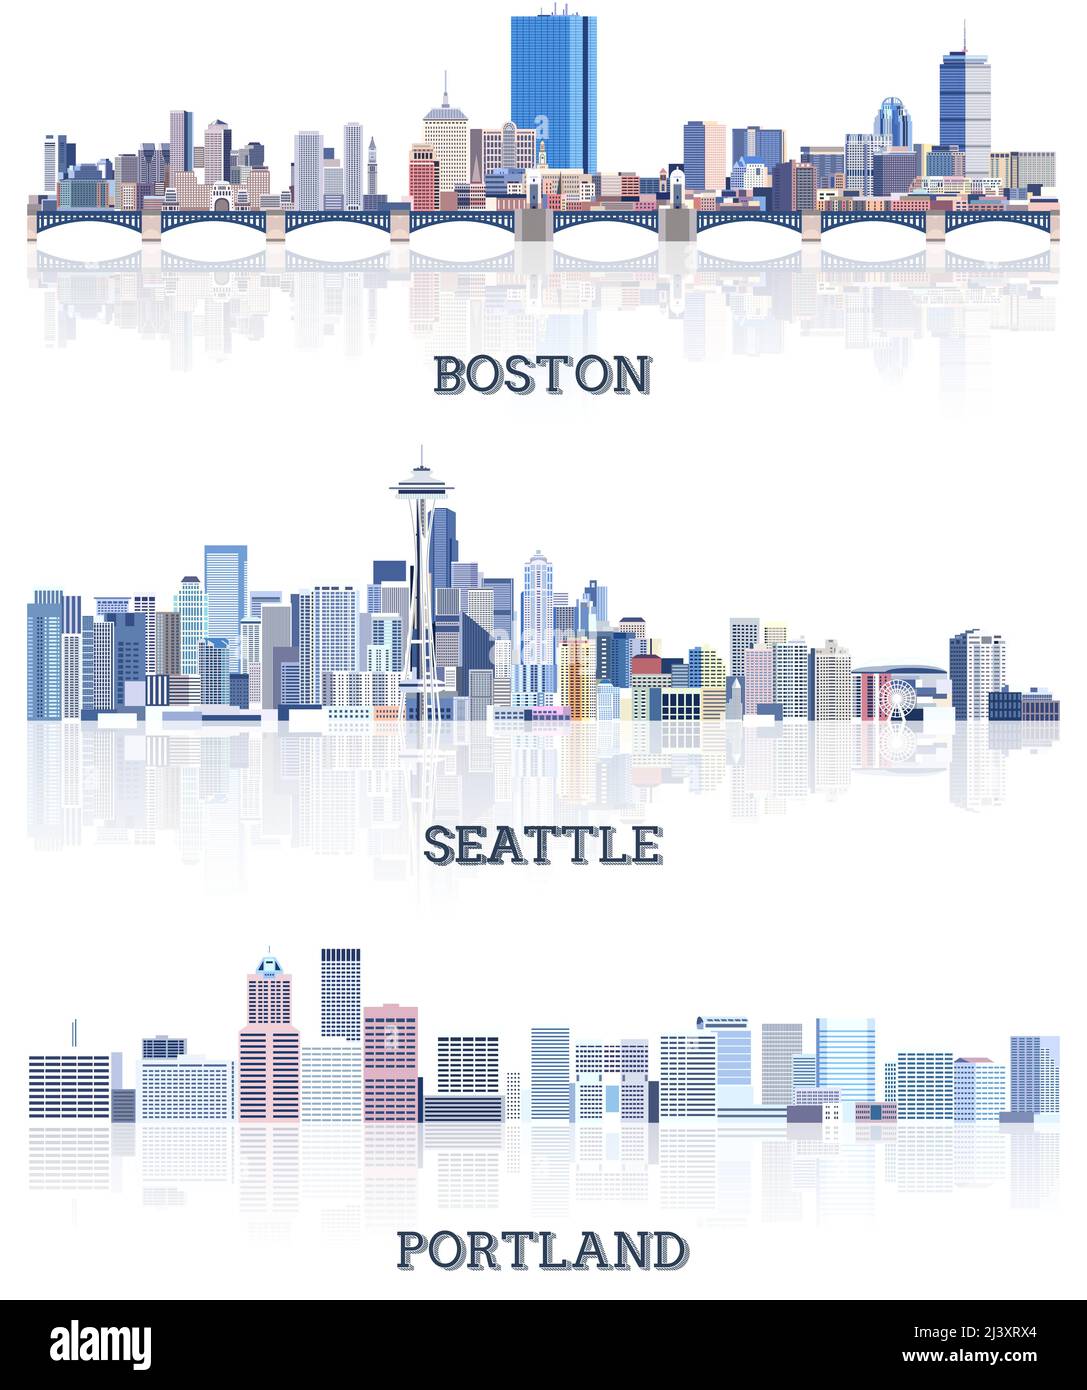 Collezione vettoriale di paesaggi urbani degli Stati Uniti: Boston, Seattle, Portland skylines in tinte di colore blu. Сrystal stile estetico Illustrazione Vettoriale